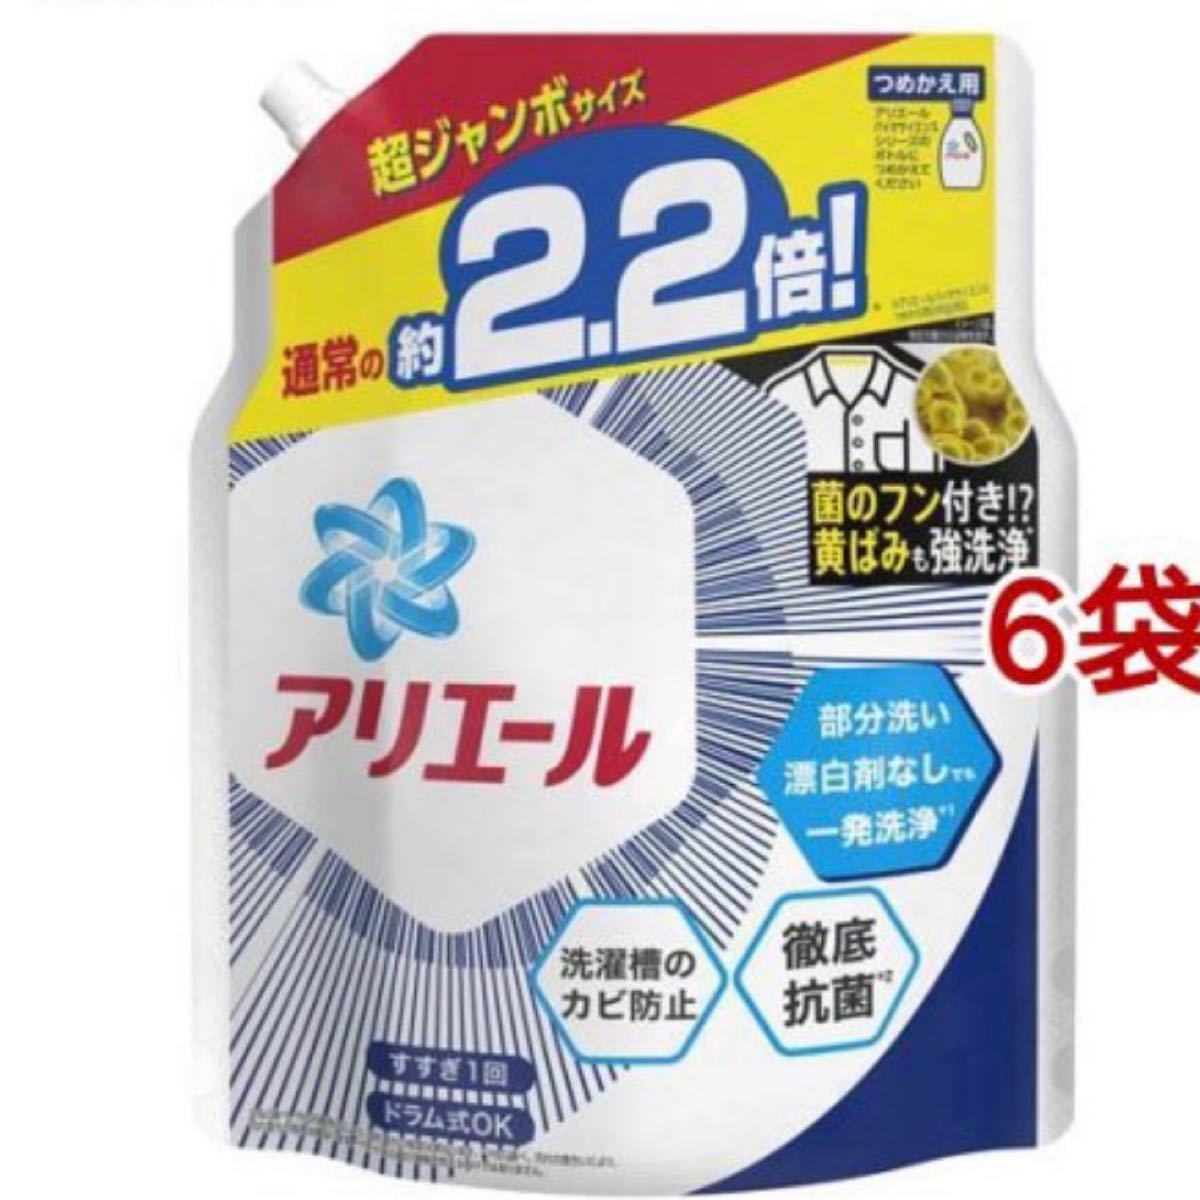 アリエールバイオサイエンスジェル 詰め替え超ジャンボサイズ 洗濯洗剤 抗菌(1520g*6袋セット)